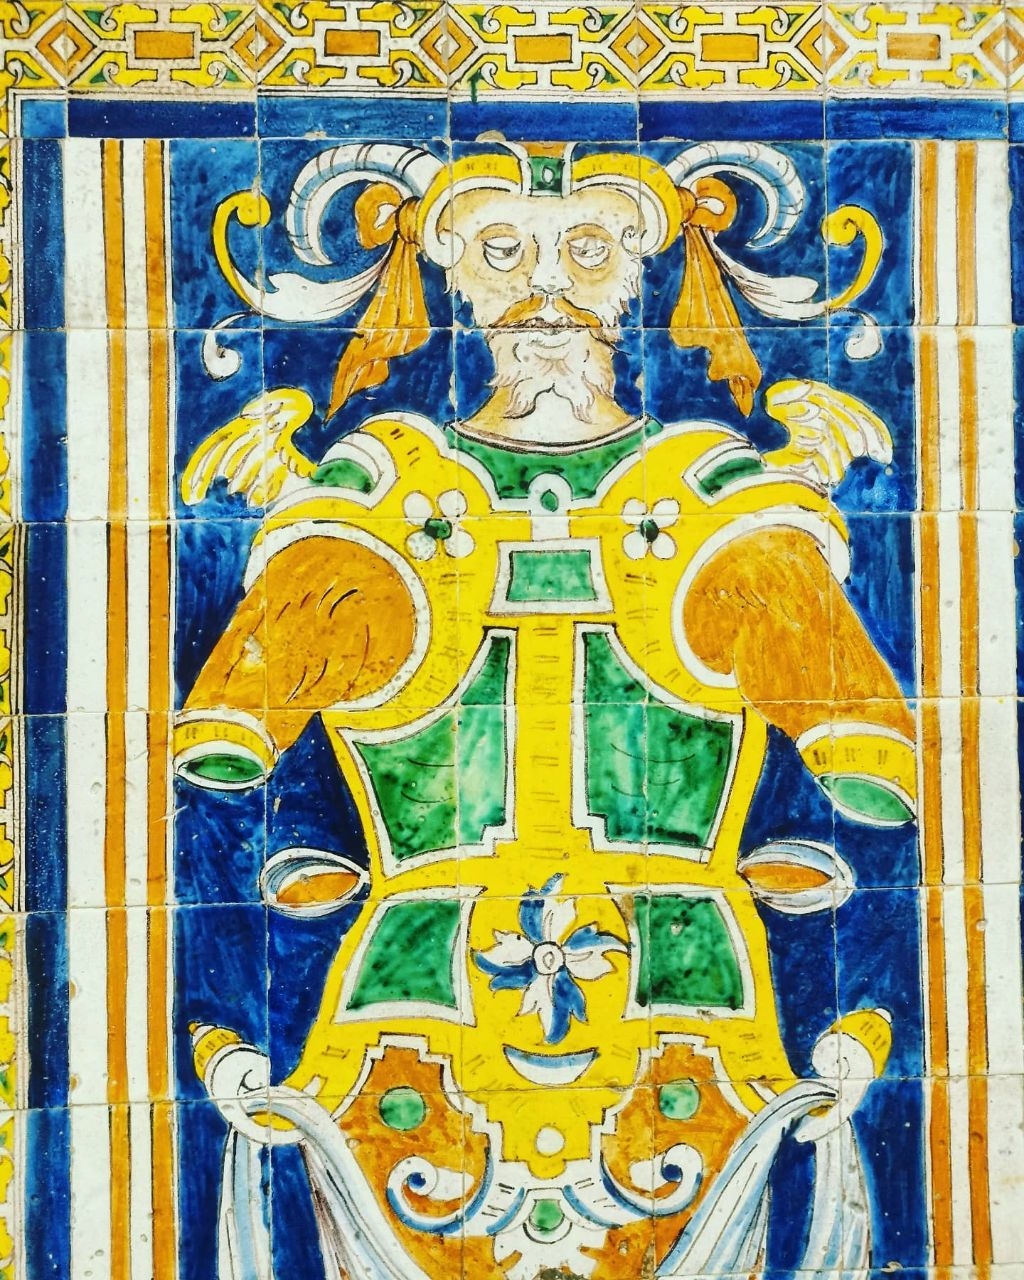 Королевский Алькасар Севильи Севилья, Испания